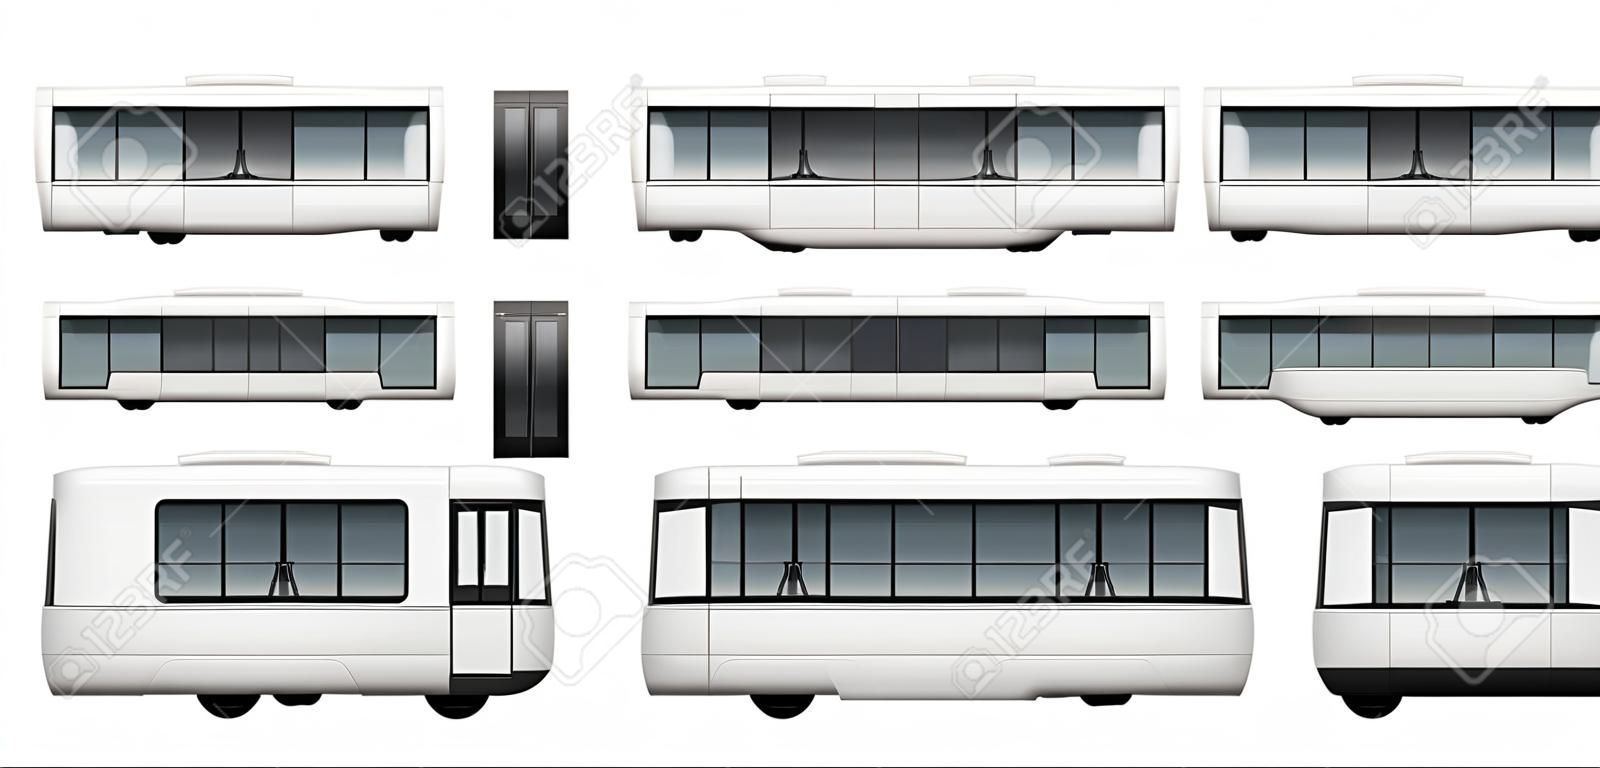 Векторный шаблон трамвая для рекламы, фирменный стиль. Белый трамвай иллюстрации. Автомобильный брендинг макет. Слои и группы хорошо организованы для удобного редактирования и перекрашивания.